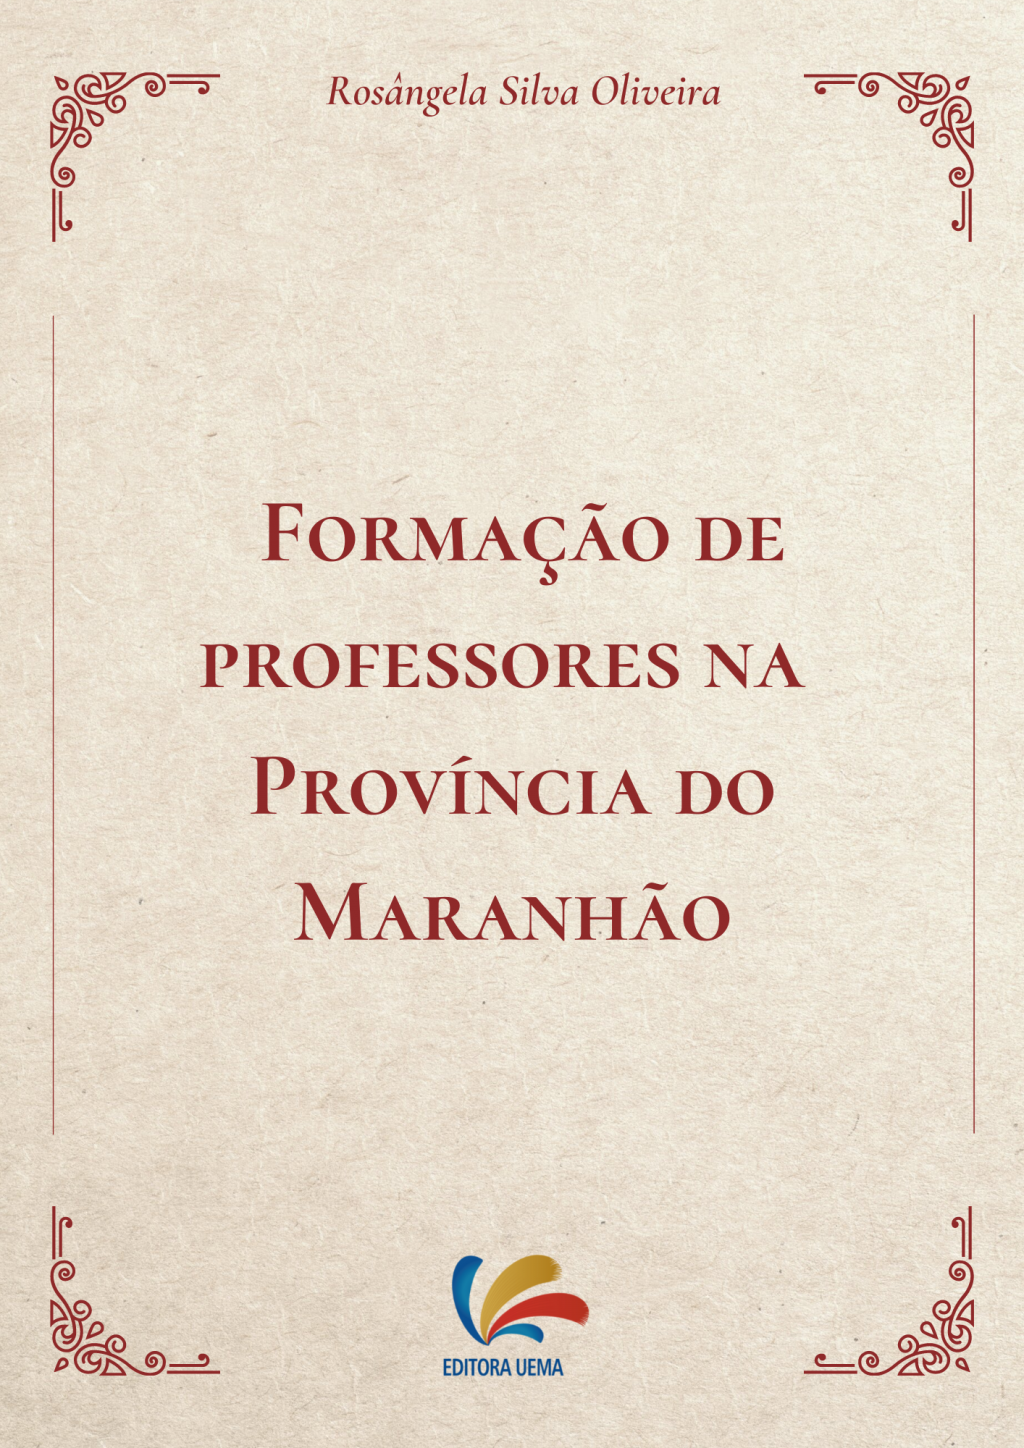 Formação de Professores na Província do Maranhão (DISPONÍVEL PARA DOWNLOAD)